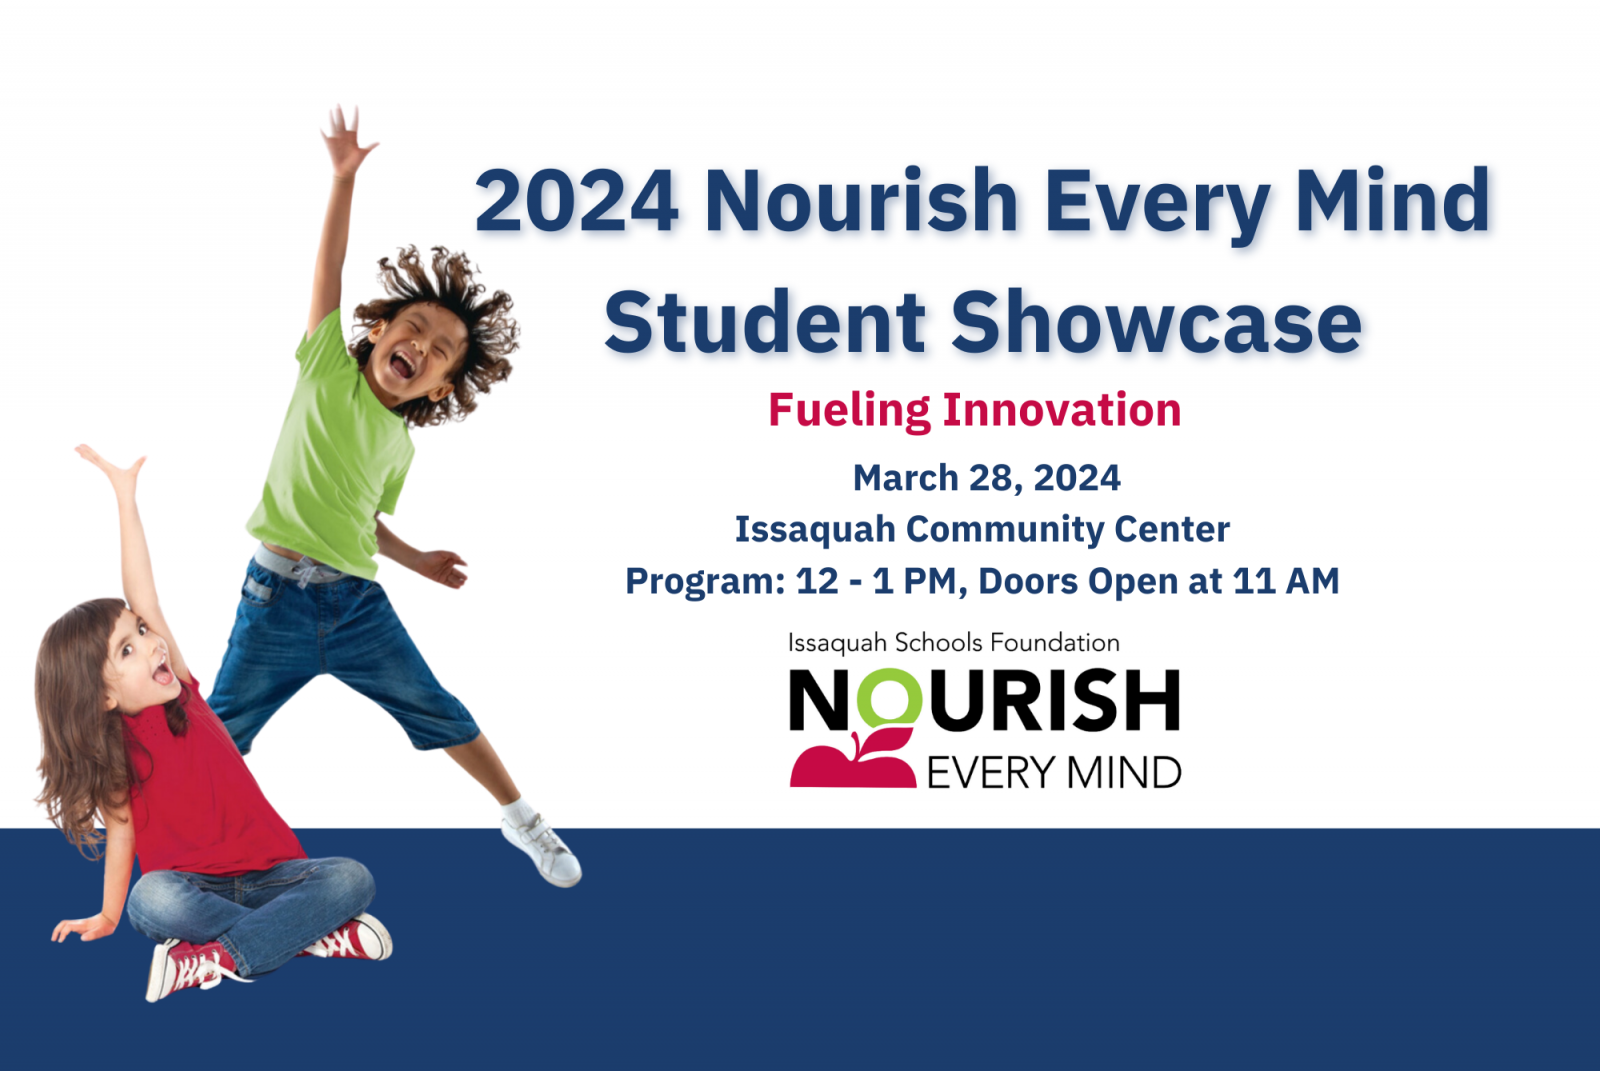 2024 Nourish Every Mind Student Showcase